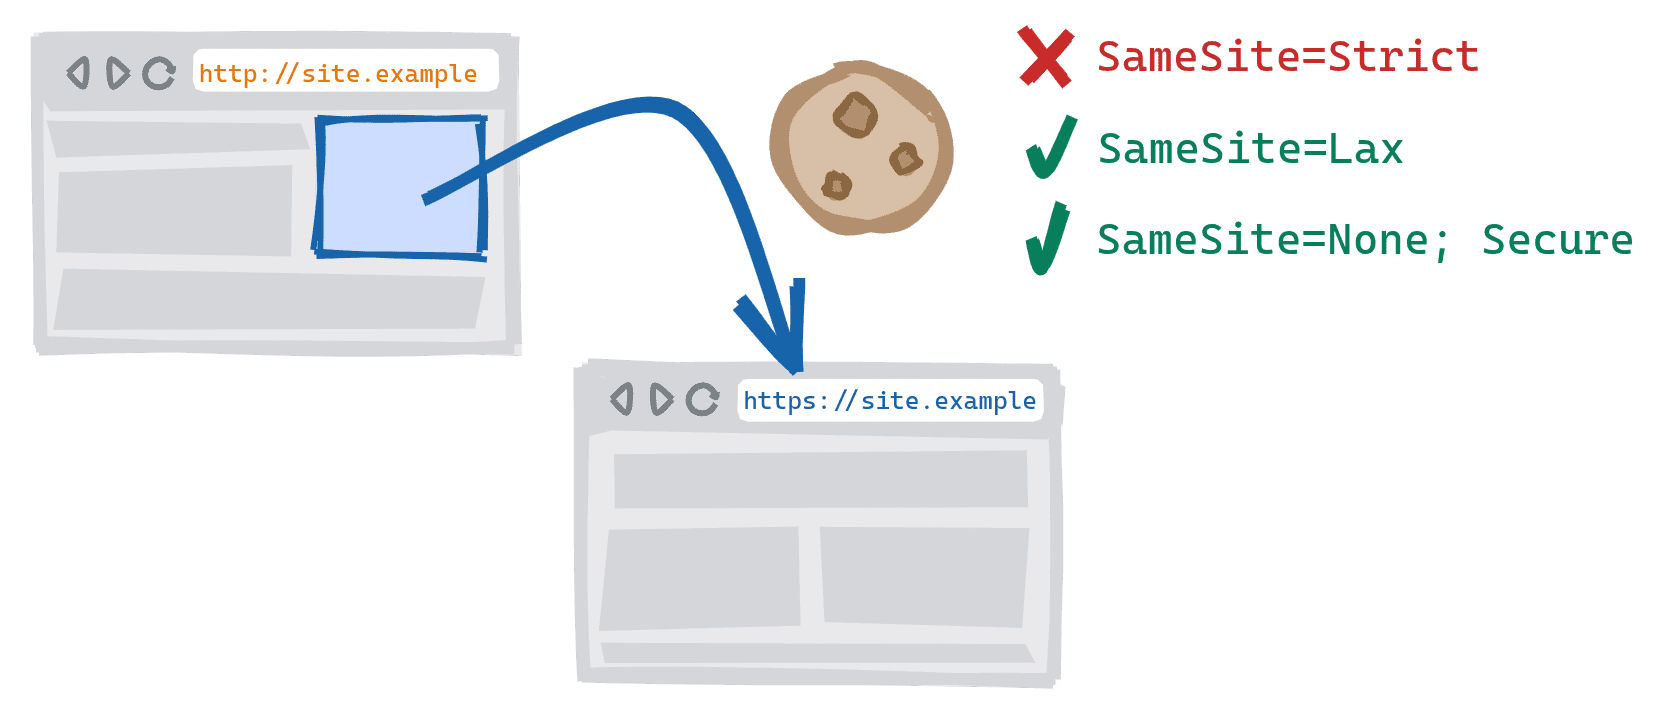 Una navegación entre esquemas que se activa al seguir un vínculo en la versión HTTP no segura de un sitio a la versión HTTPS segura Se bloquearon las cookies estrictas de SameSite=, SameSite=Lax y SameSite=None; se permiten las cookies seguras.